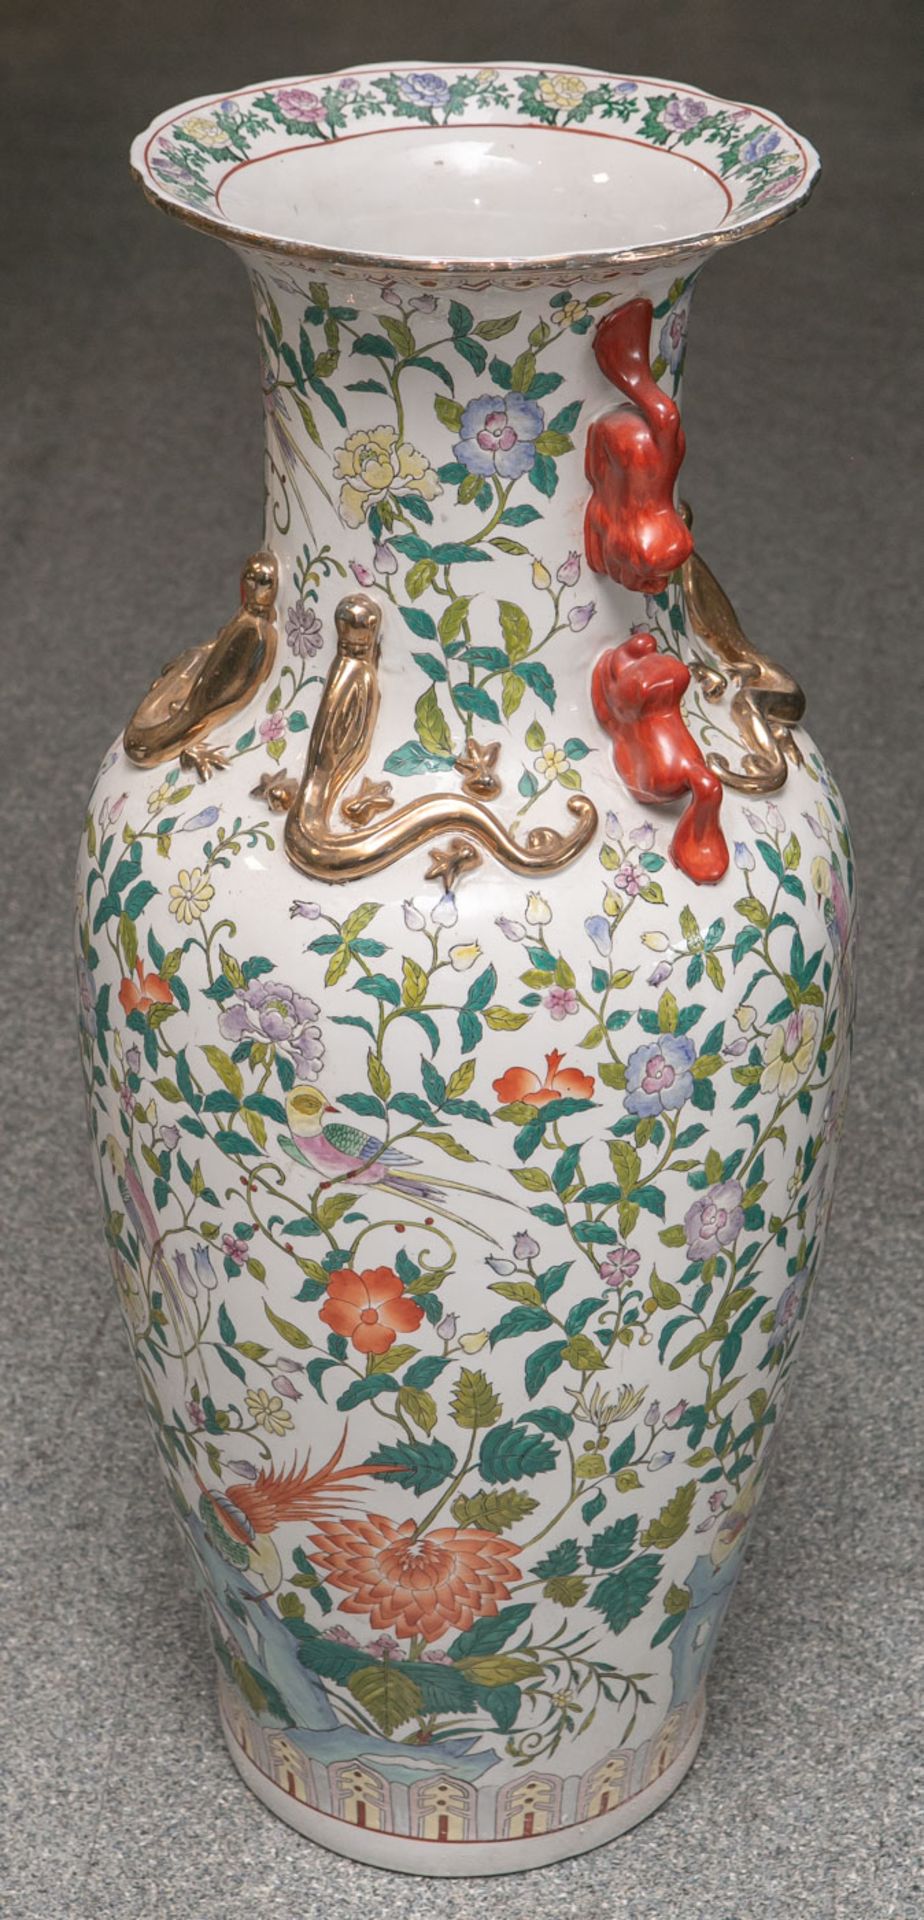 Große Bodenvase aus Porzellan (China, Alter unbekannt), farbig staffiert mit Vogel-